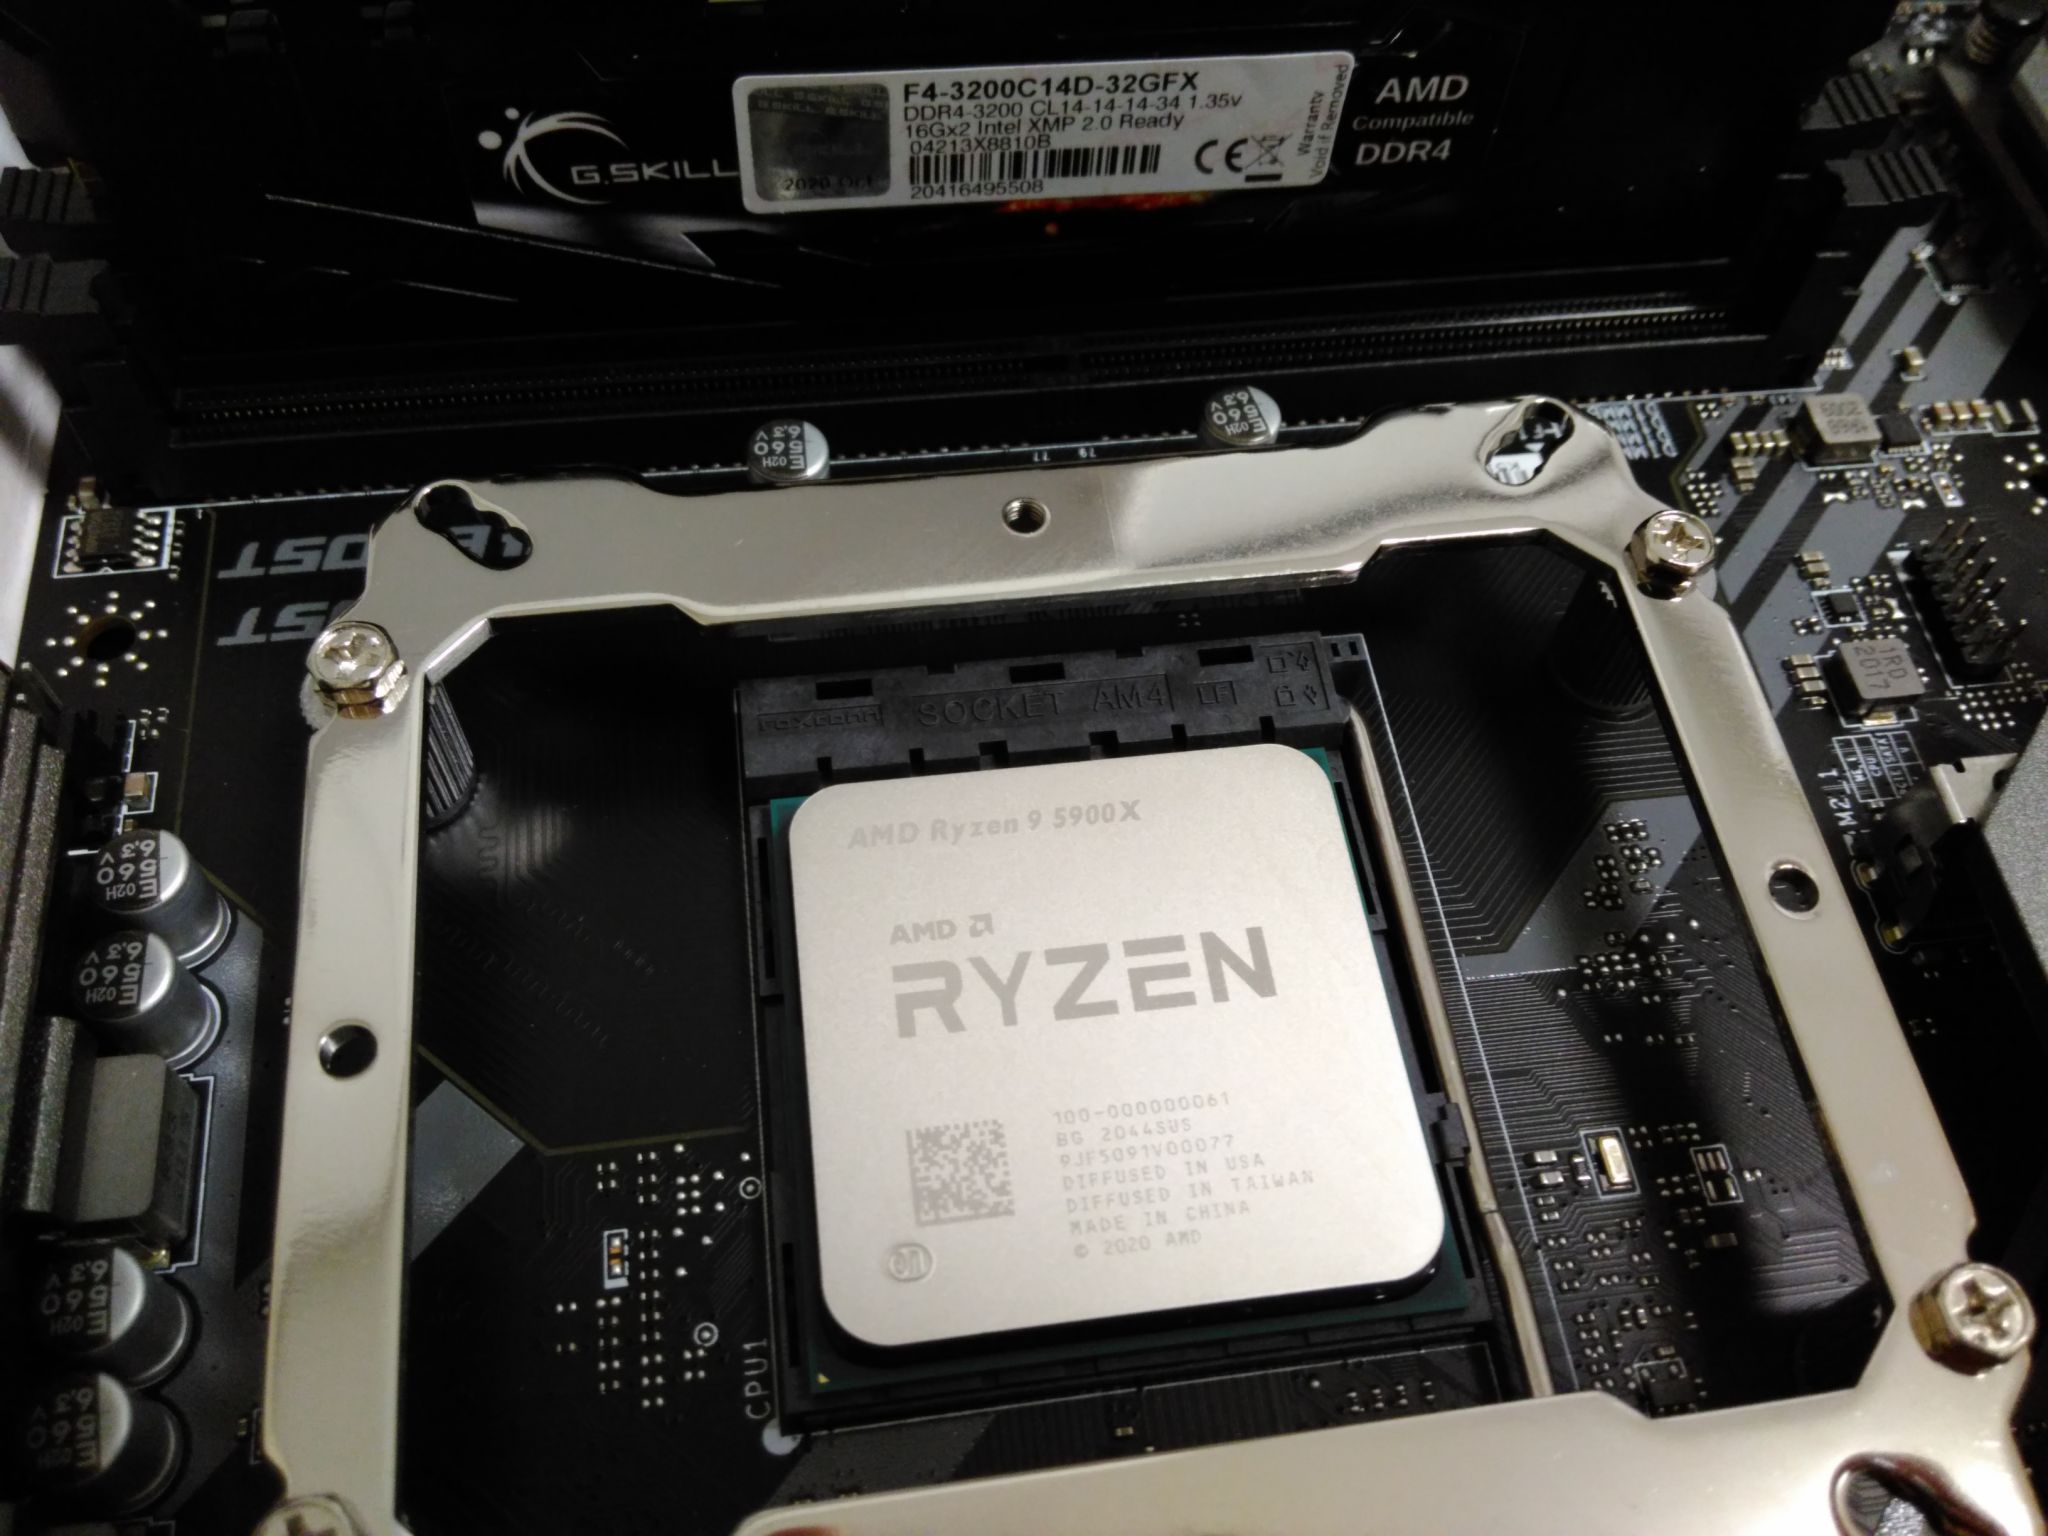 Amd ryzen 9 5900x oem. R9 5900x. Ryzen 9 5900x. AMD Ryzen 9 5900x 12 Core. Процессор AMD Ryzen 9 5900x OEM am4 Vermeer.